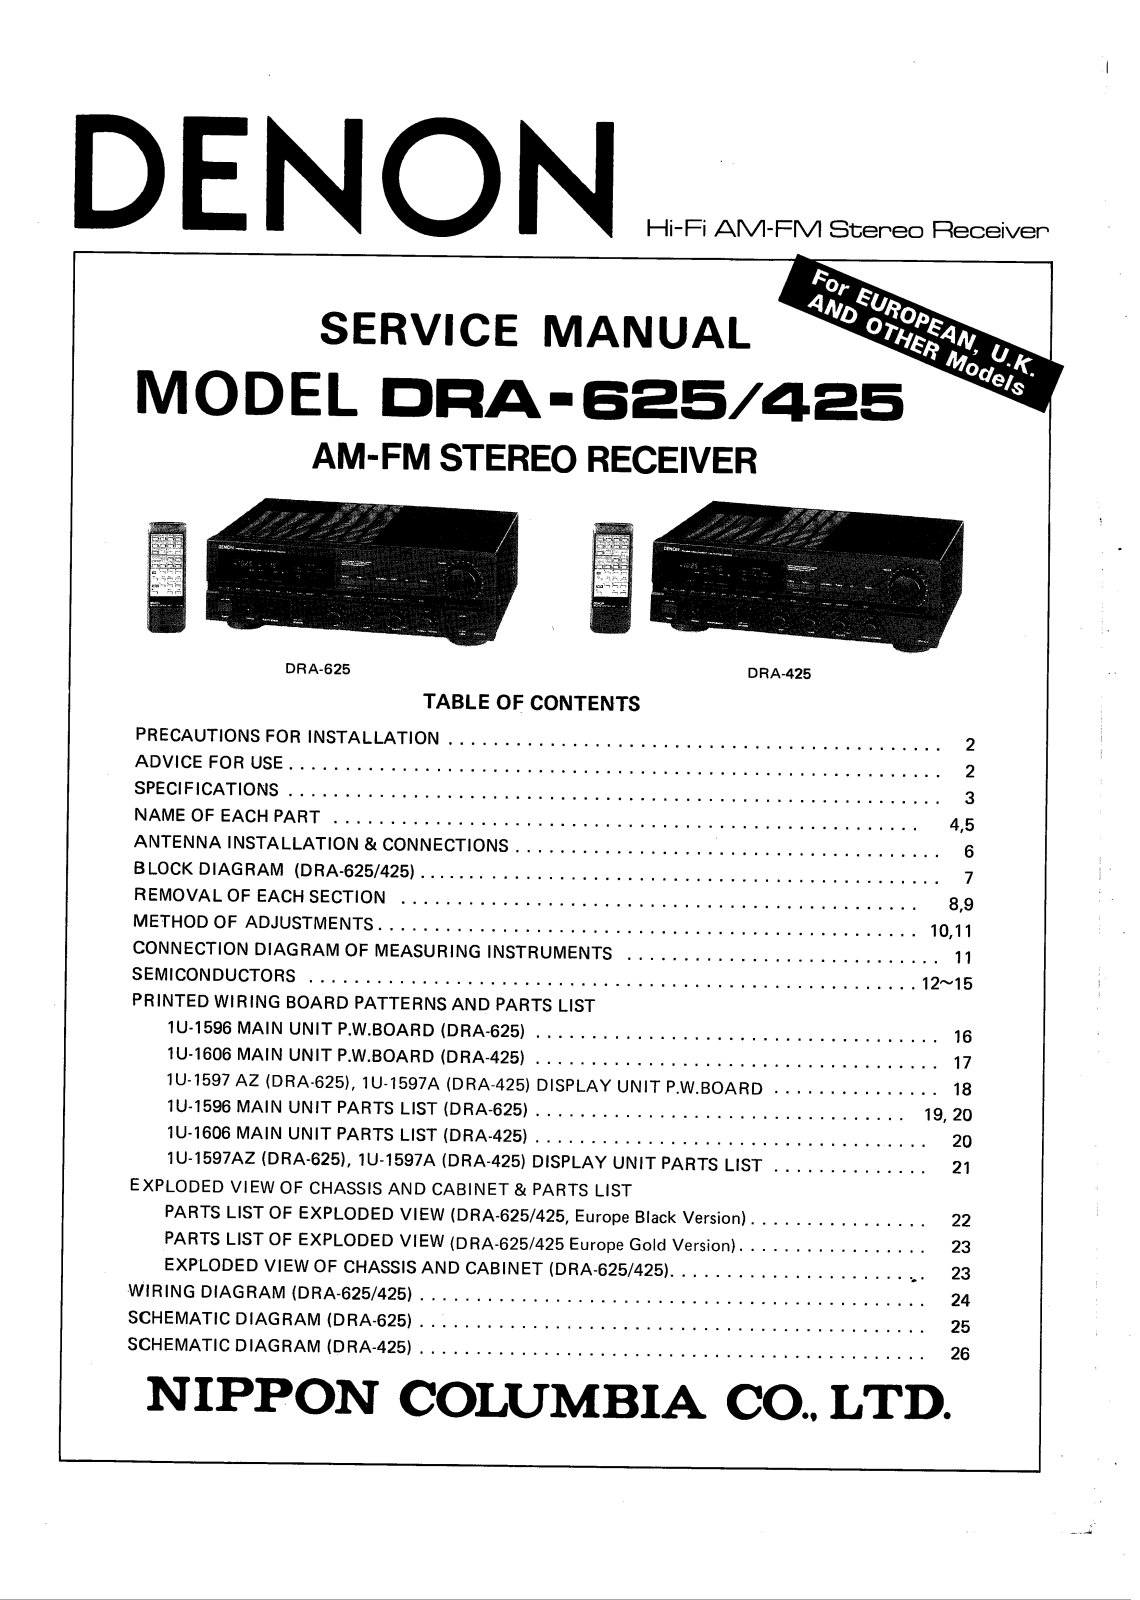 Denon DRA-625 Service Manual